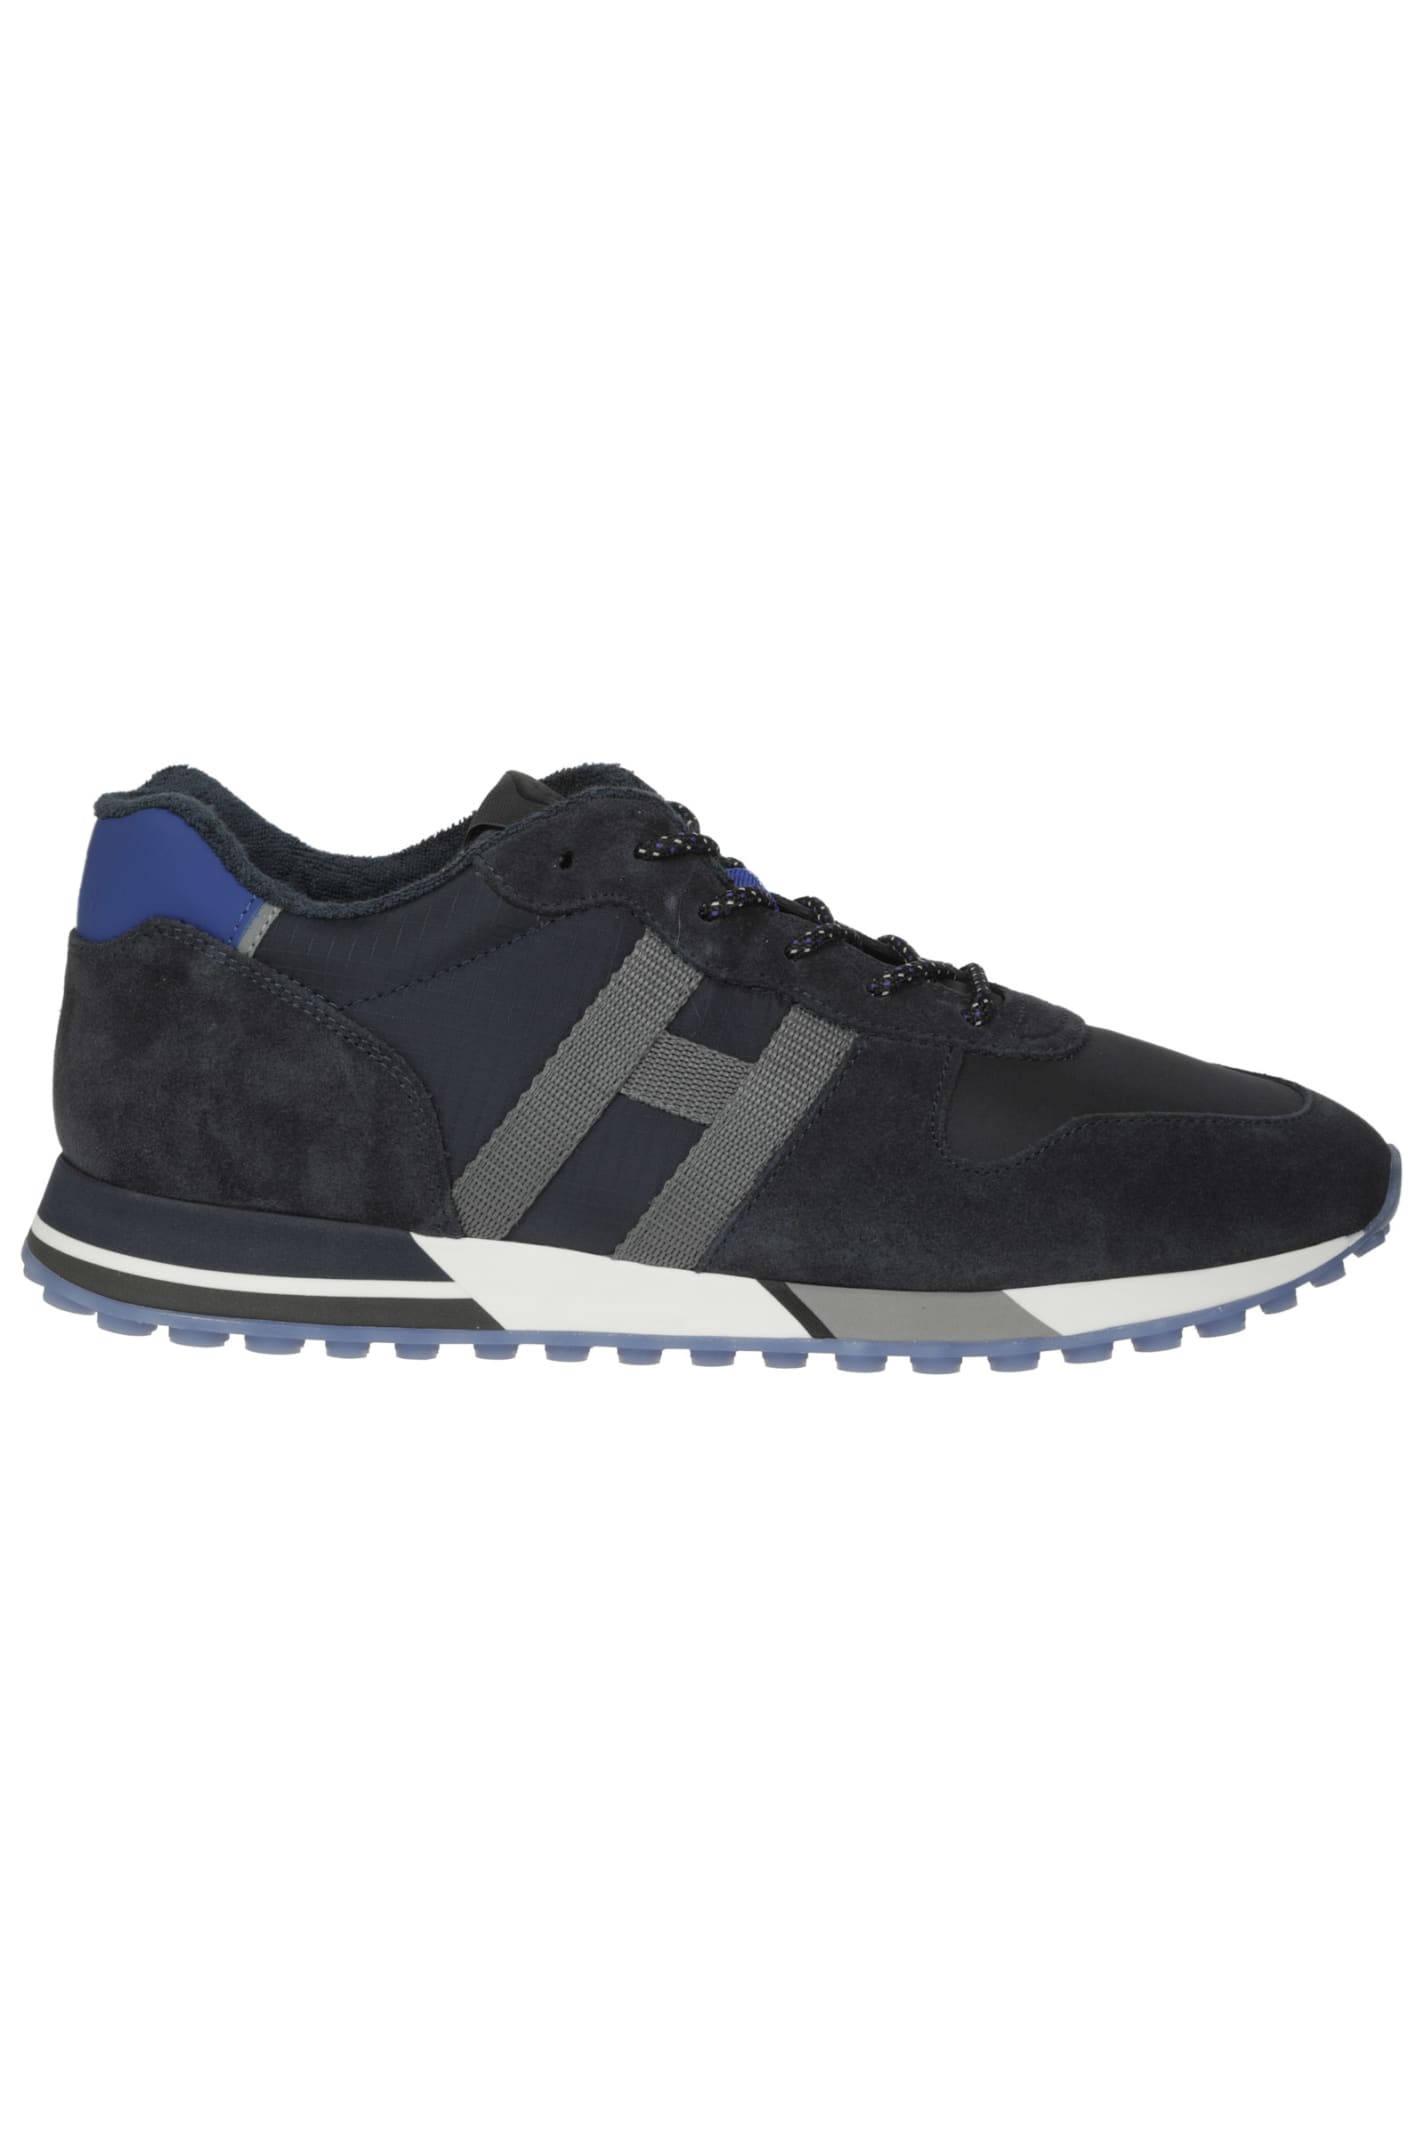 Hogan H383 Nastro Sneakers